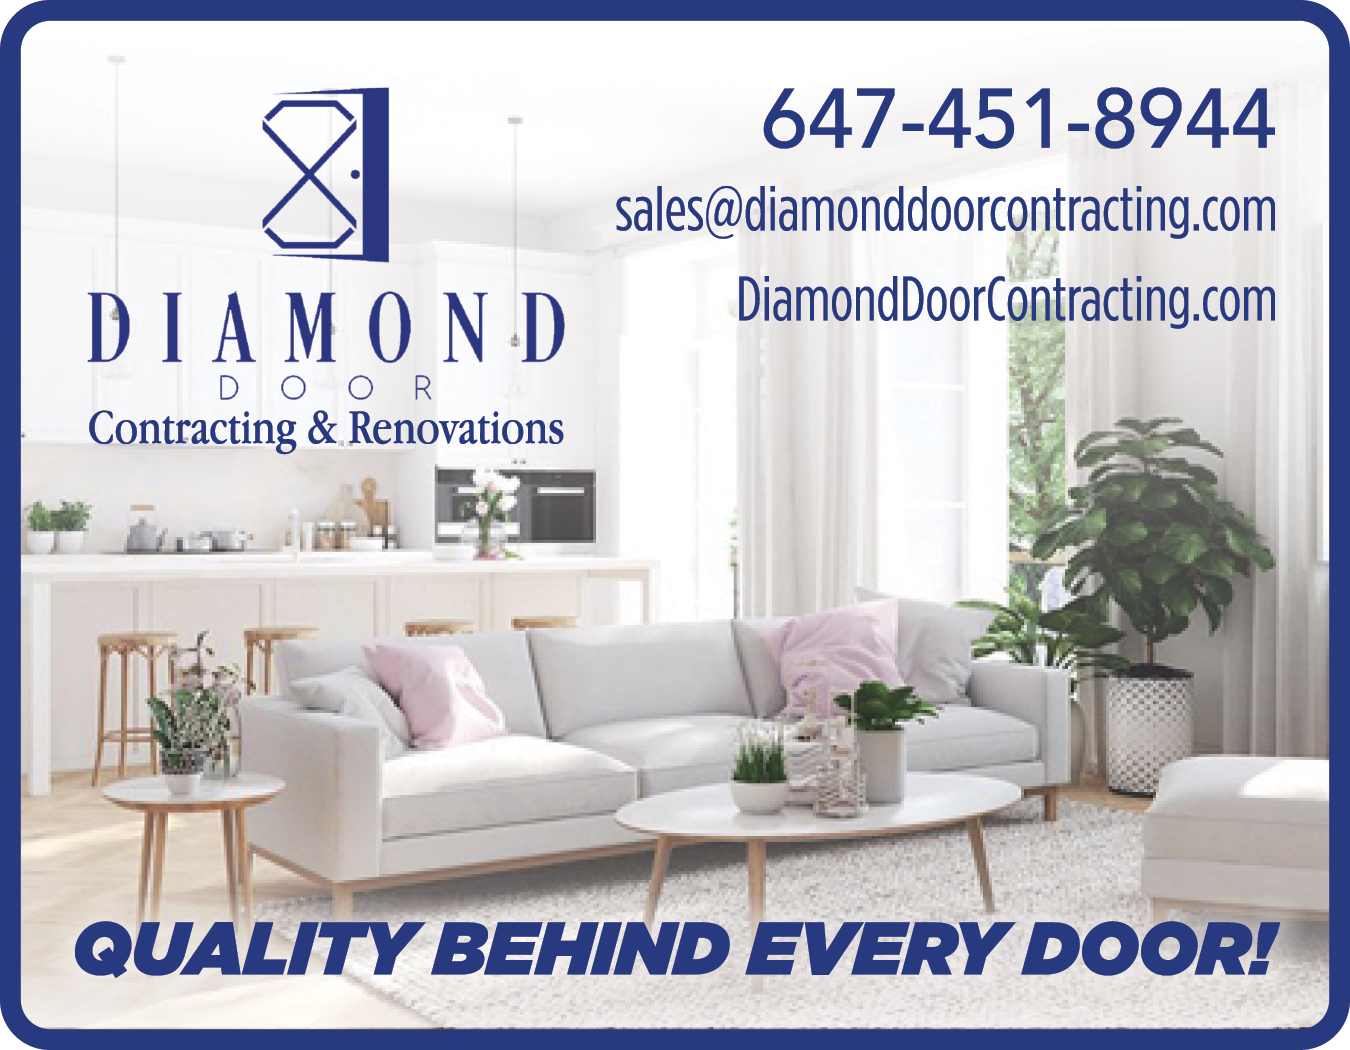 Diamond Door Contracting & Renovations